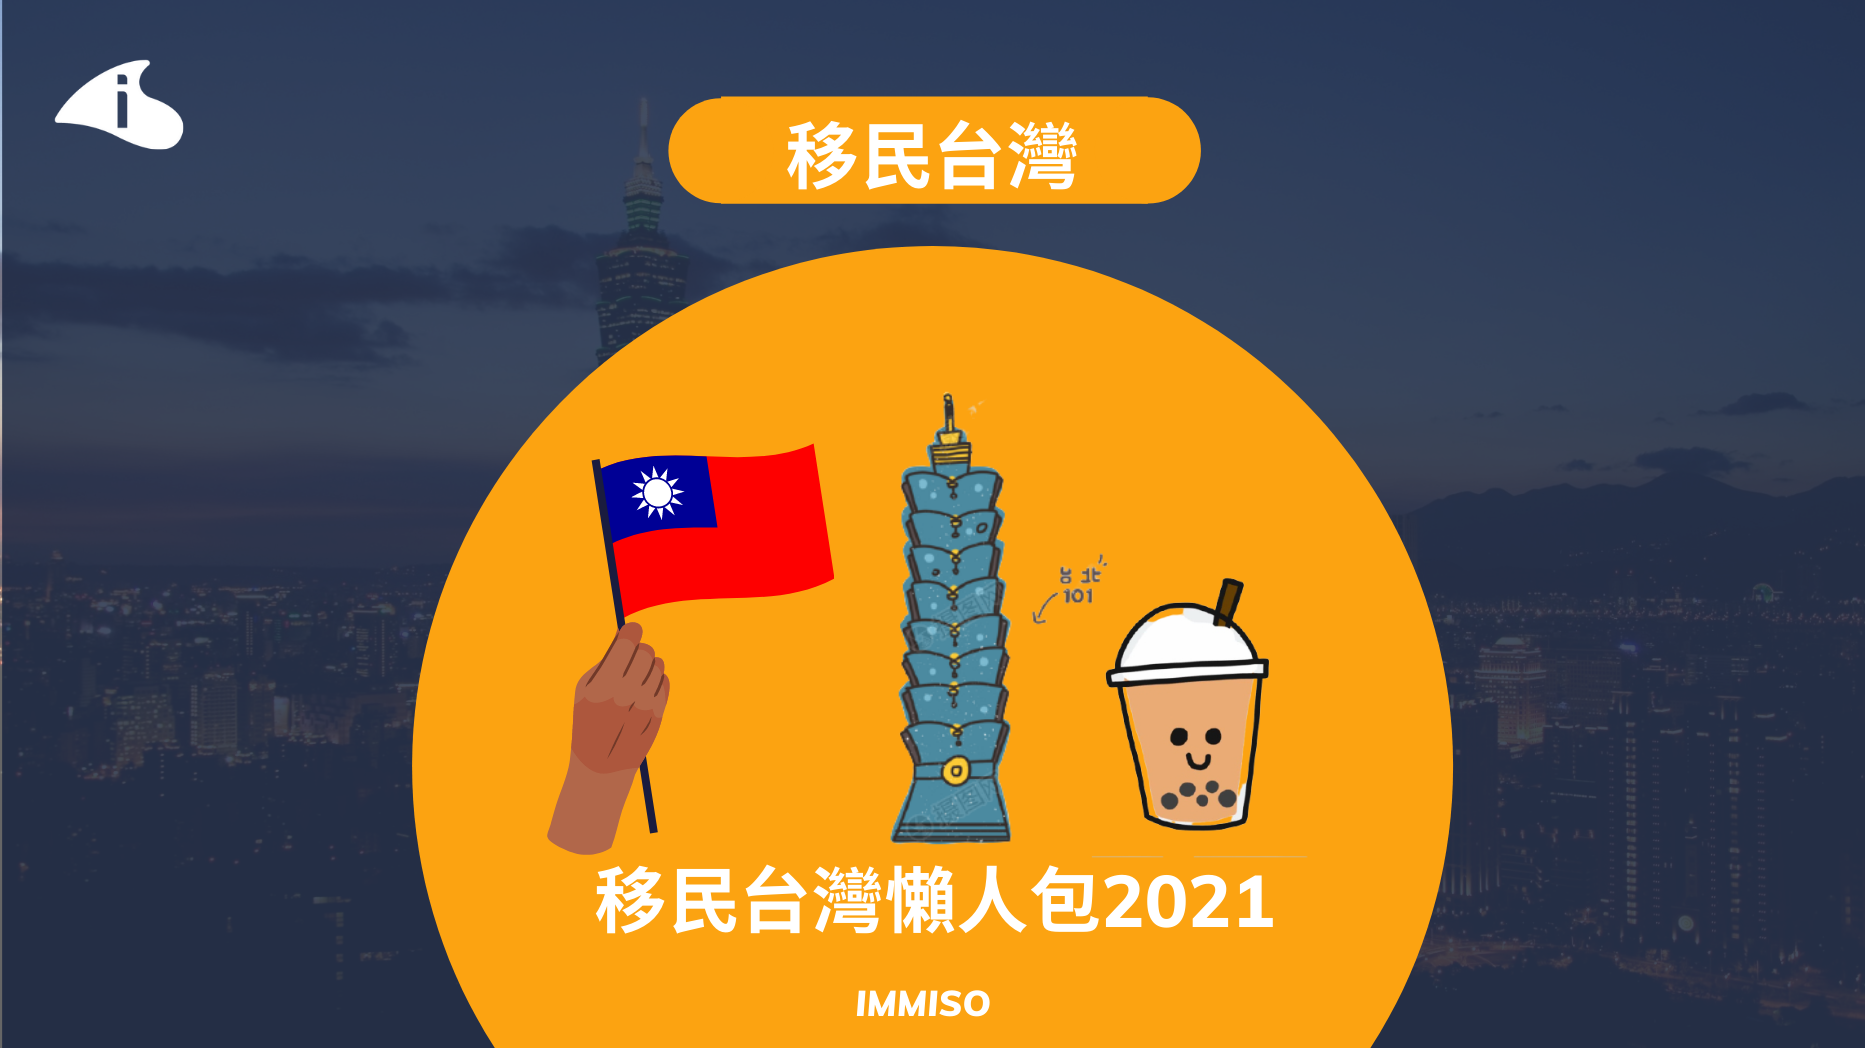 【移民台灣】 移民台灣懶人包2021